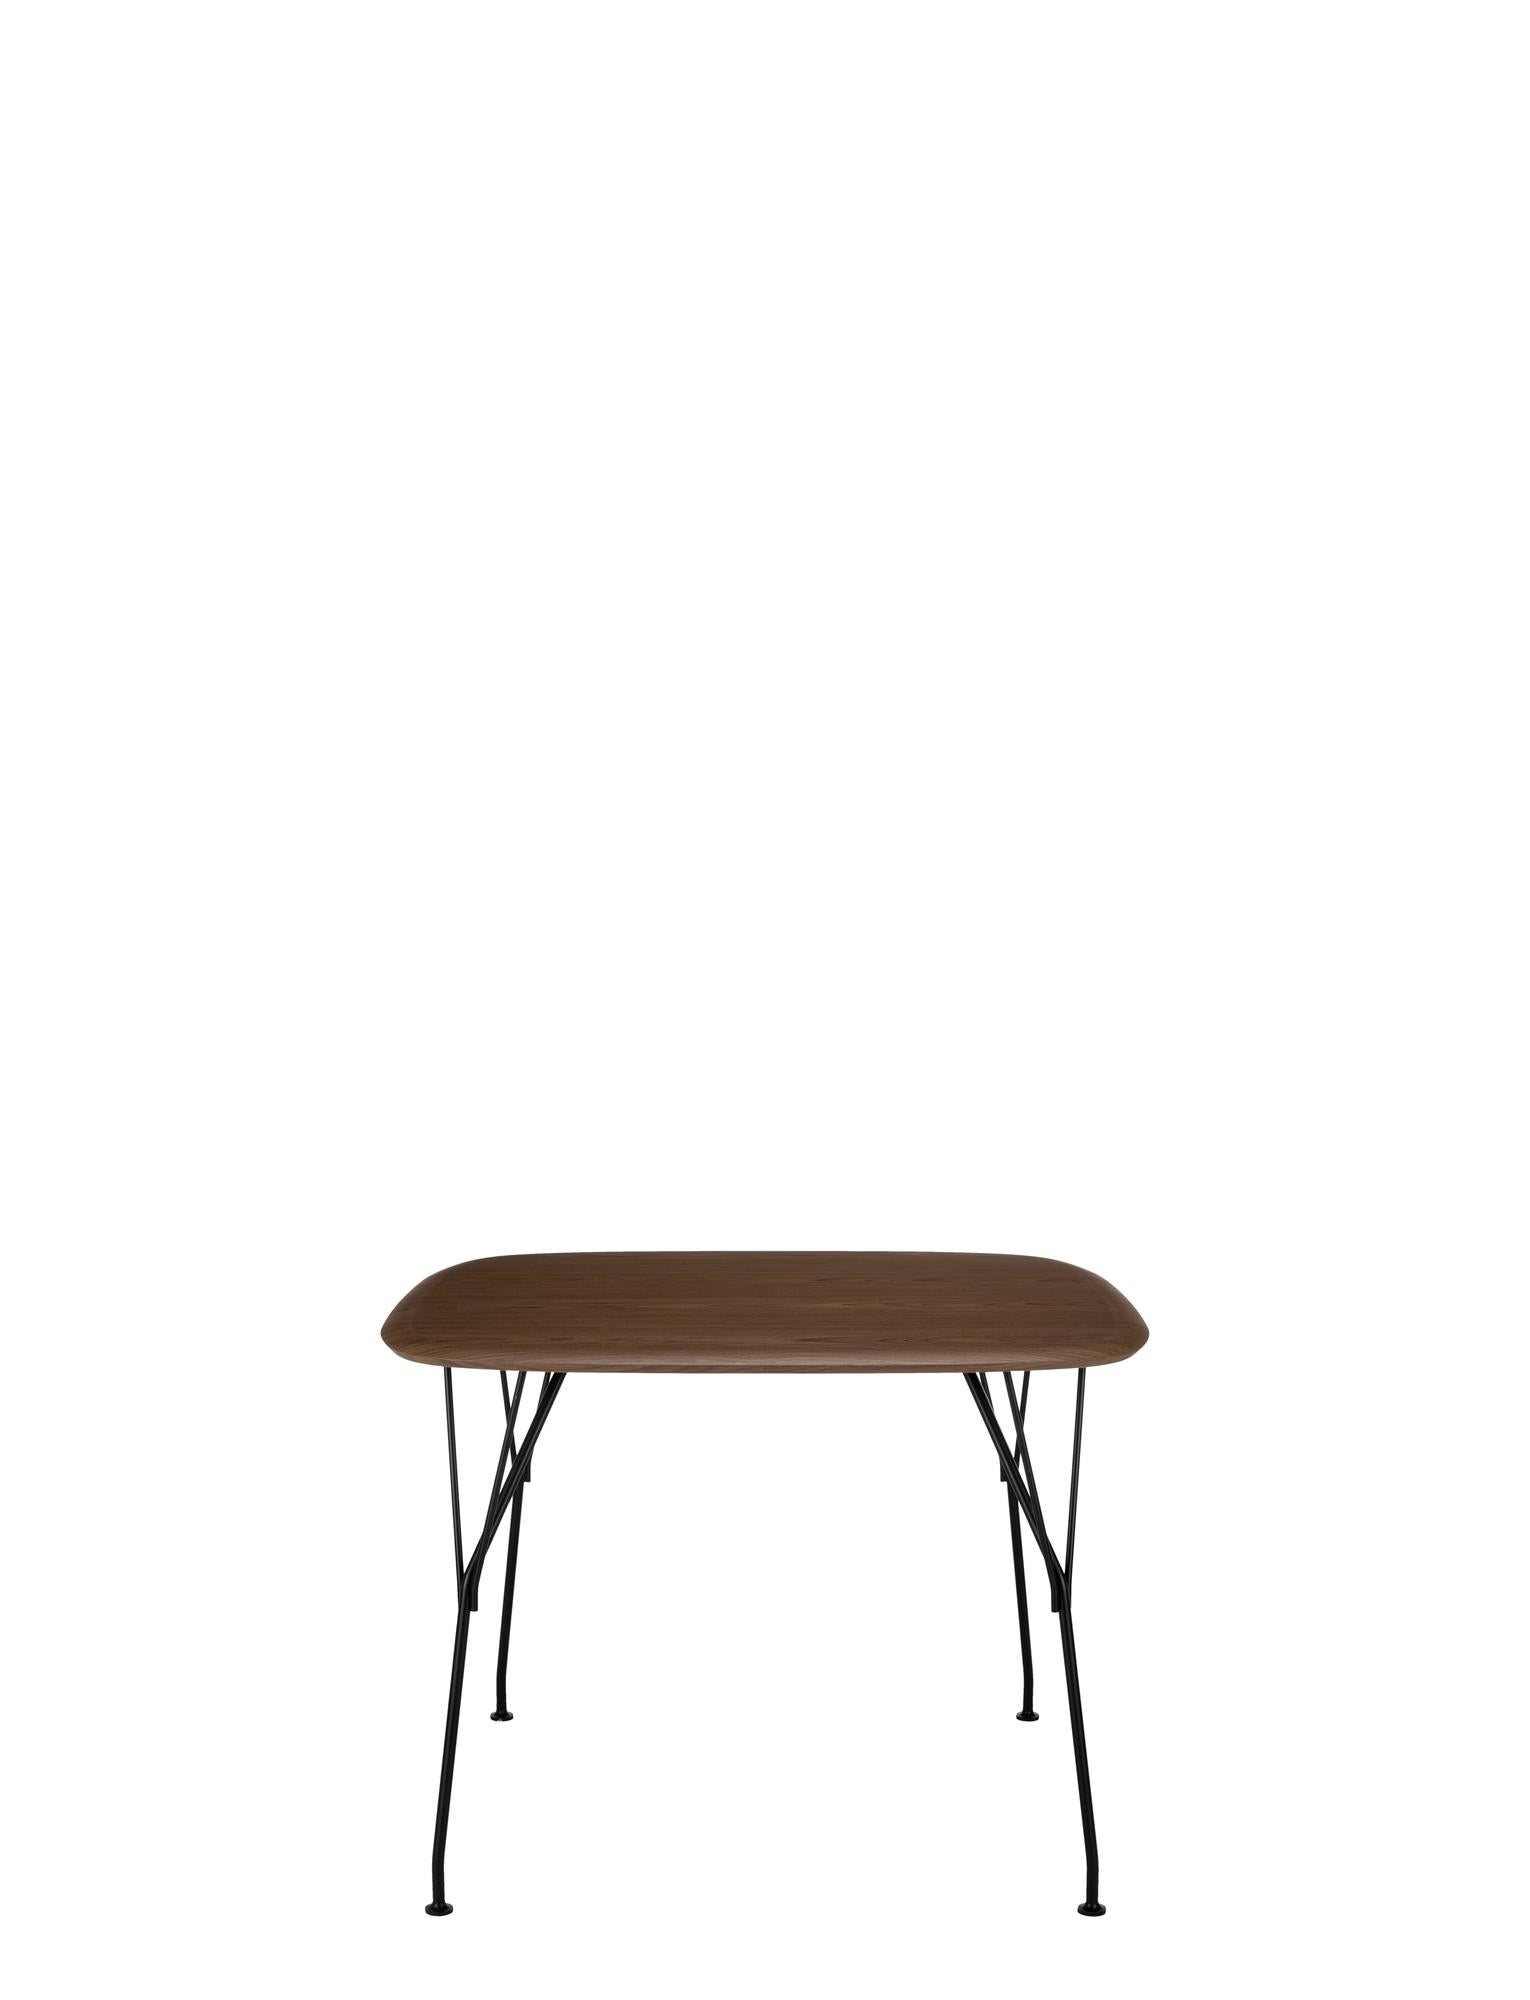 Les tables en bois Viscount sont les dernières nouveautés. Ces tables composées naturellement complètent le choix de sièges de la collection et créent un espace de vie durable dans lequel le bois joue un rôle central grâce à ses propriétés de